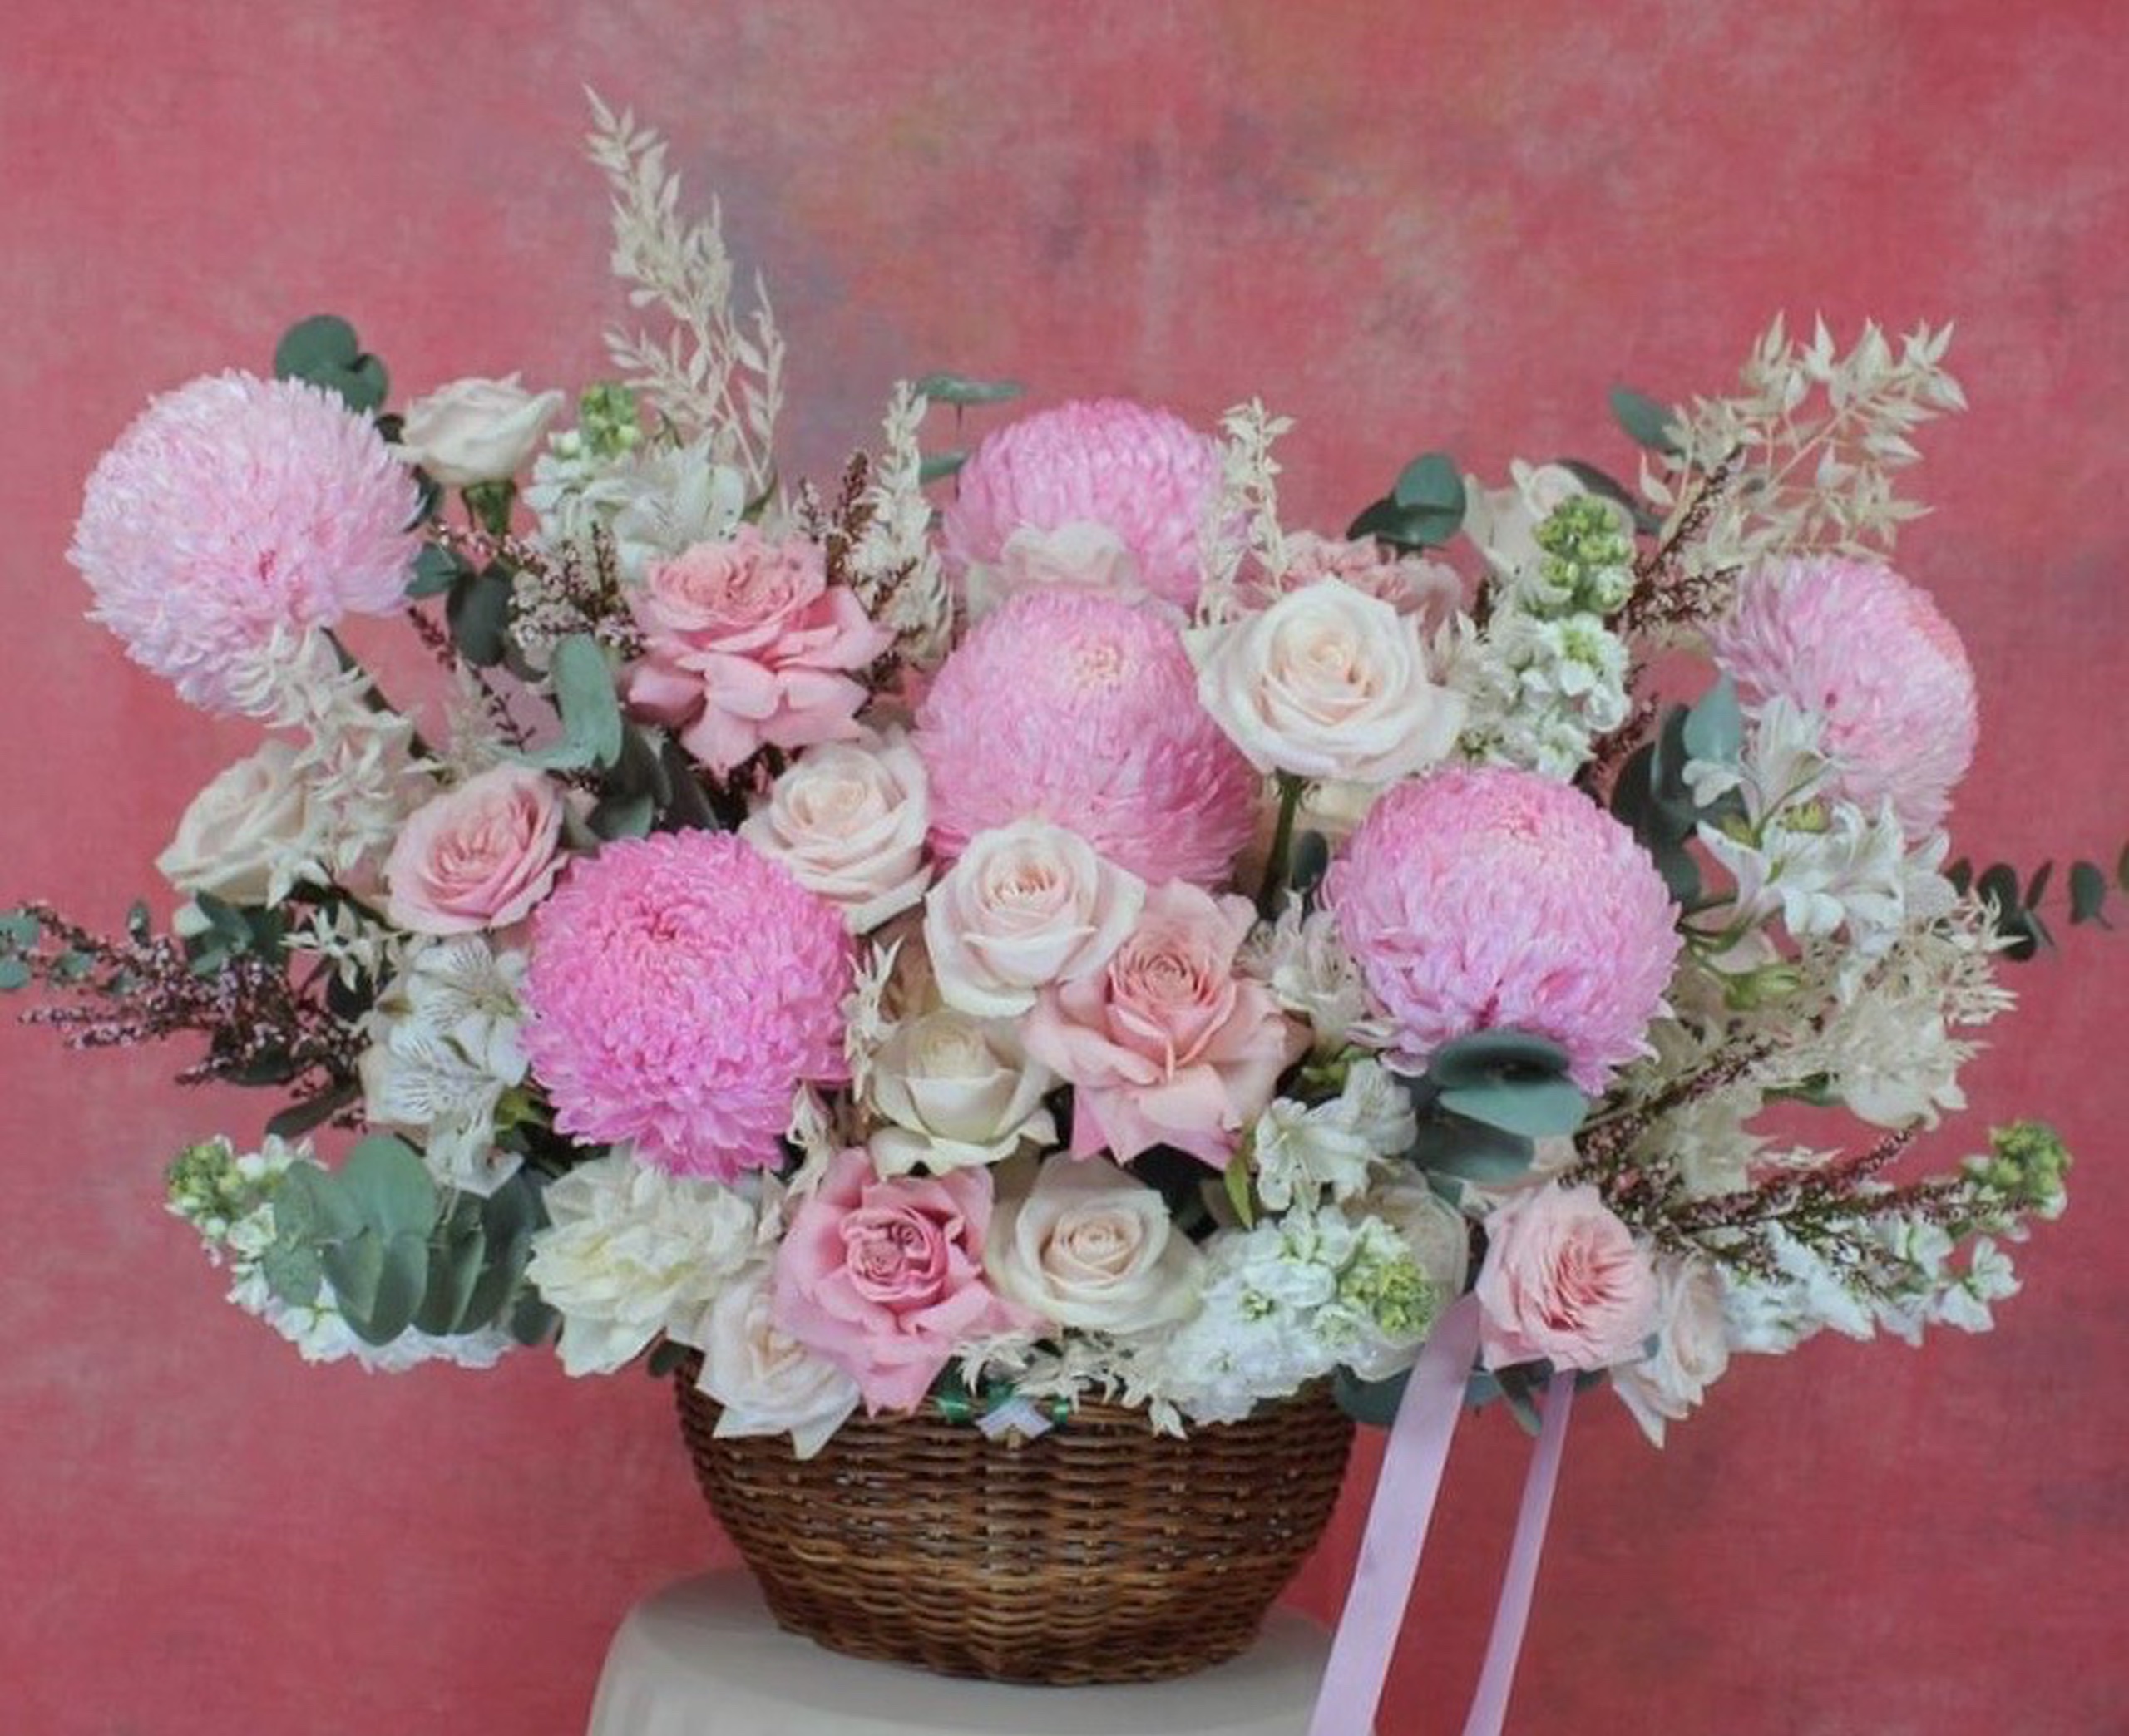 Hoa mẫu đơn hồng kết hợp với hoa hồng trắng tạo thành một tác phẩm tuyệt đẹp 